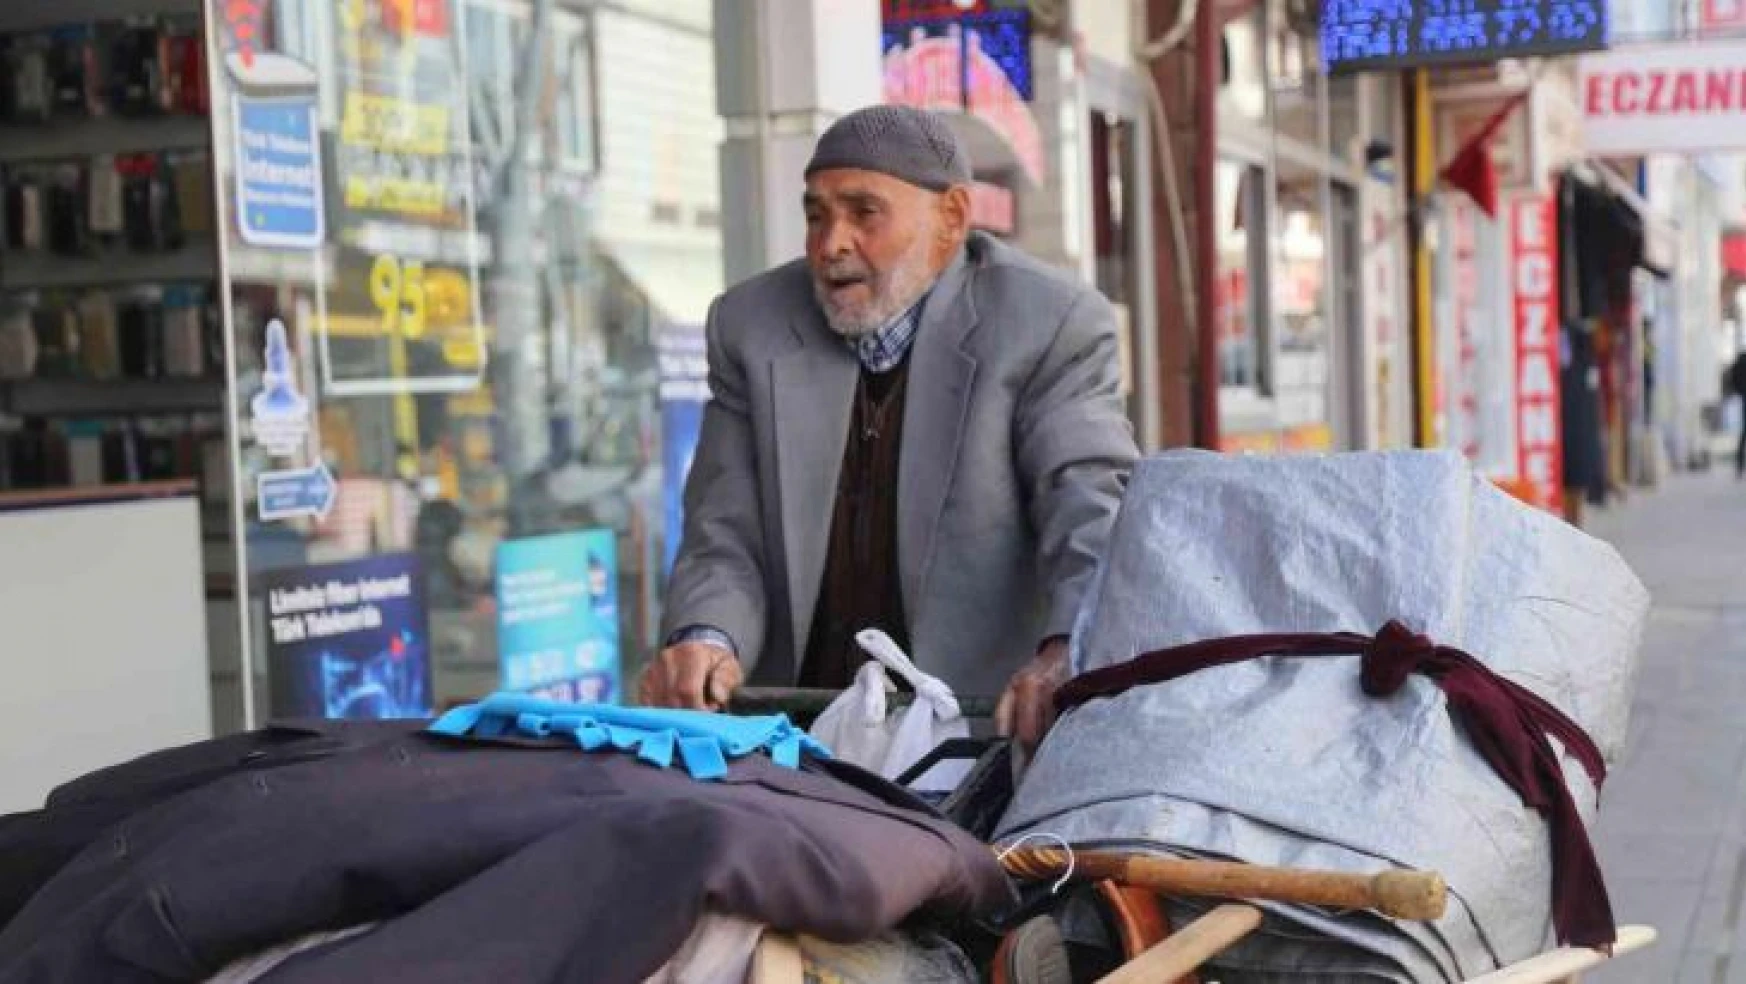 93 yaşındaki Ahmet dede gençlere taş çıkartıyor